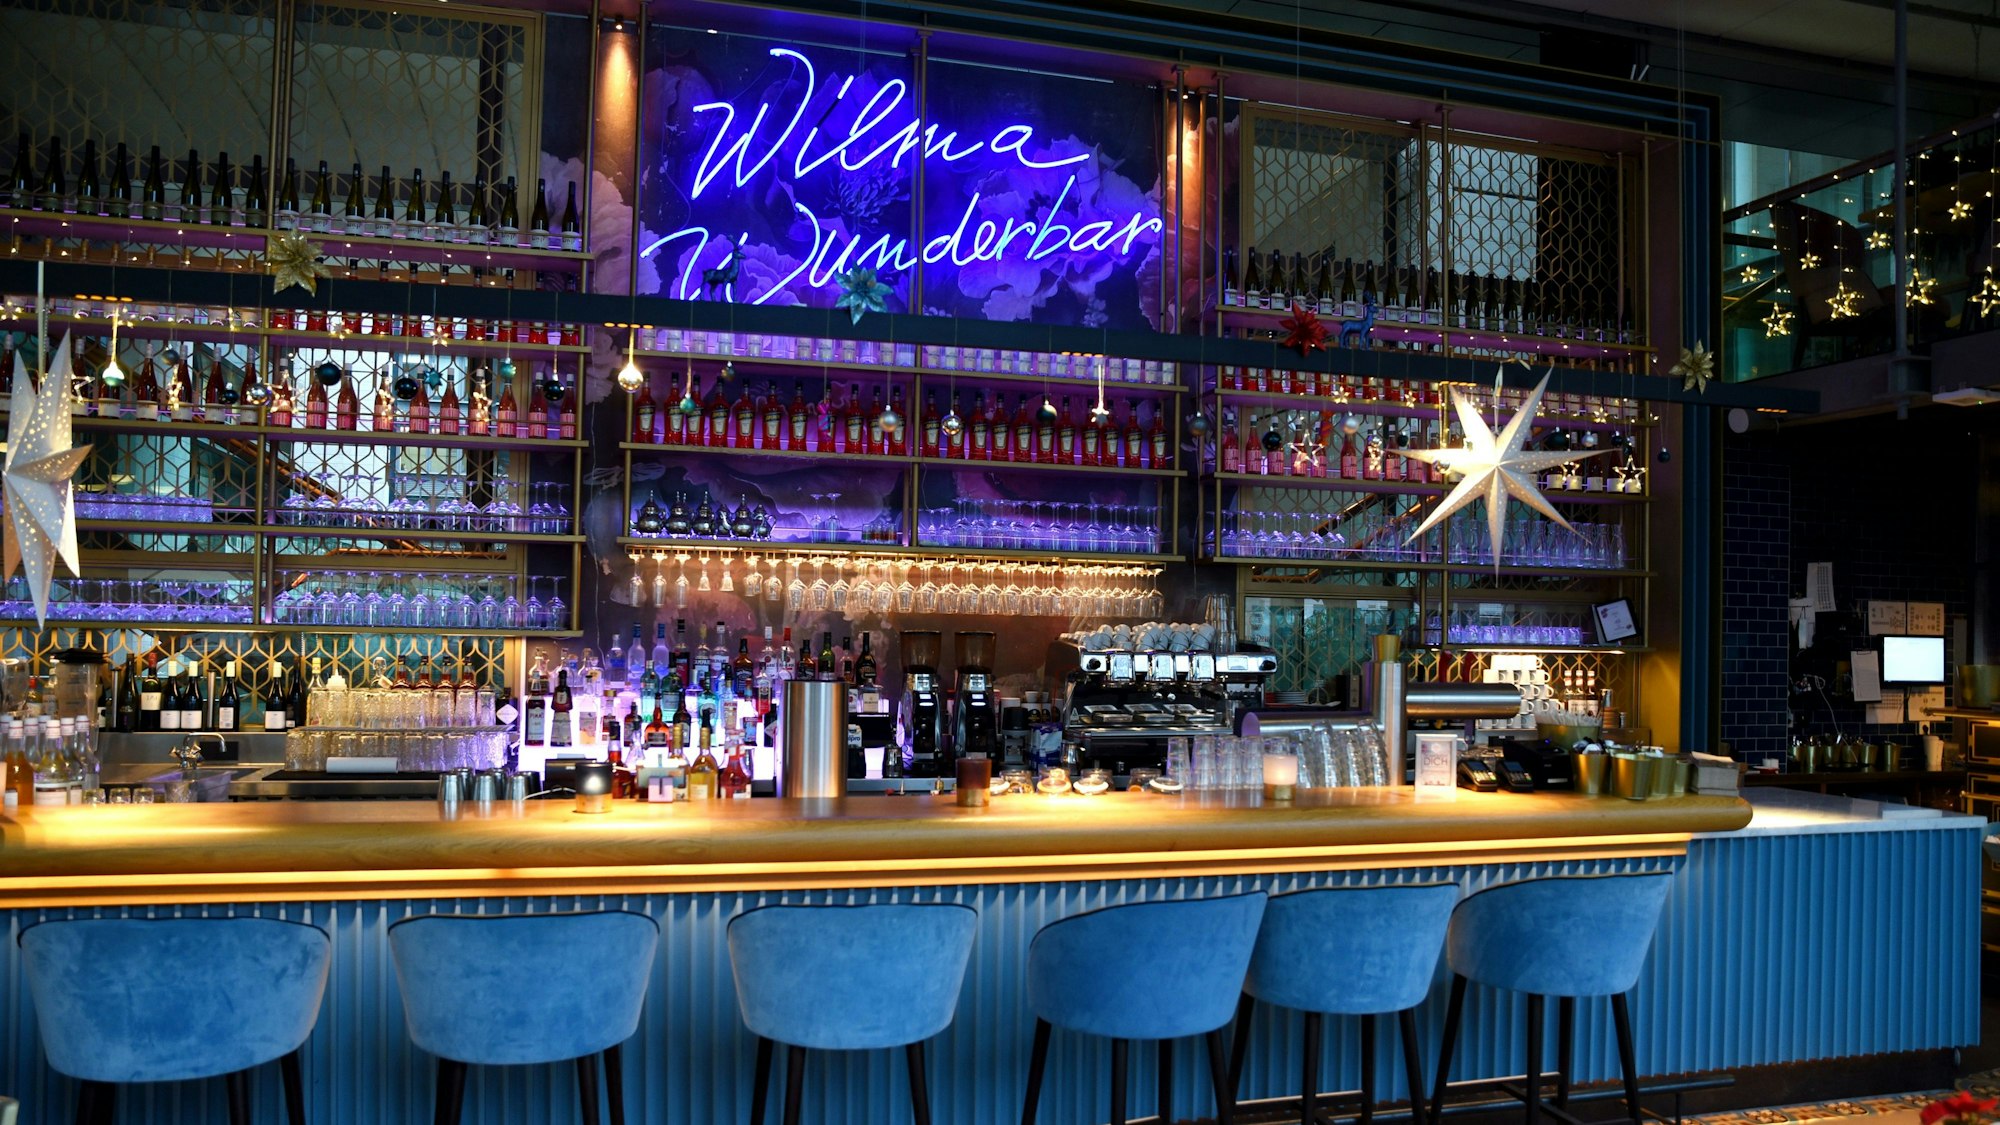 Das blaue Wilma Wunderbar - Schild leuchtet über der Bar.